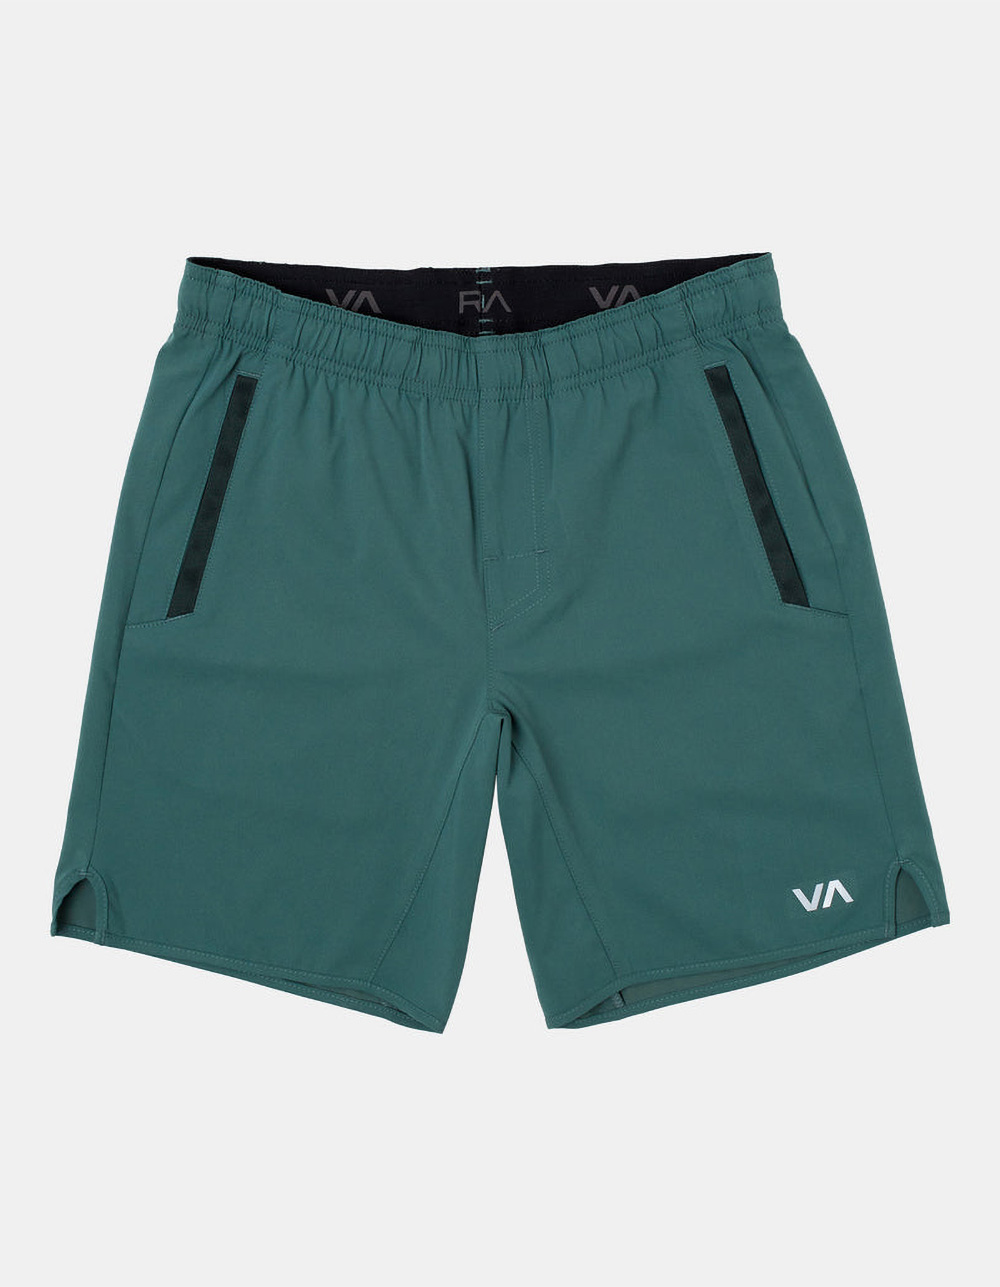 RVCA Yogger Stretch Boys Shorts